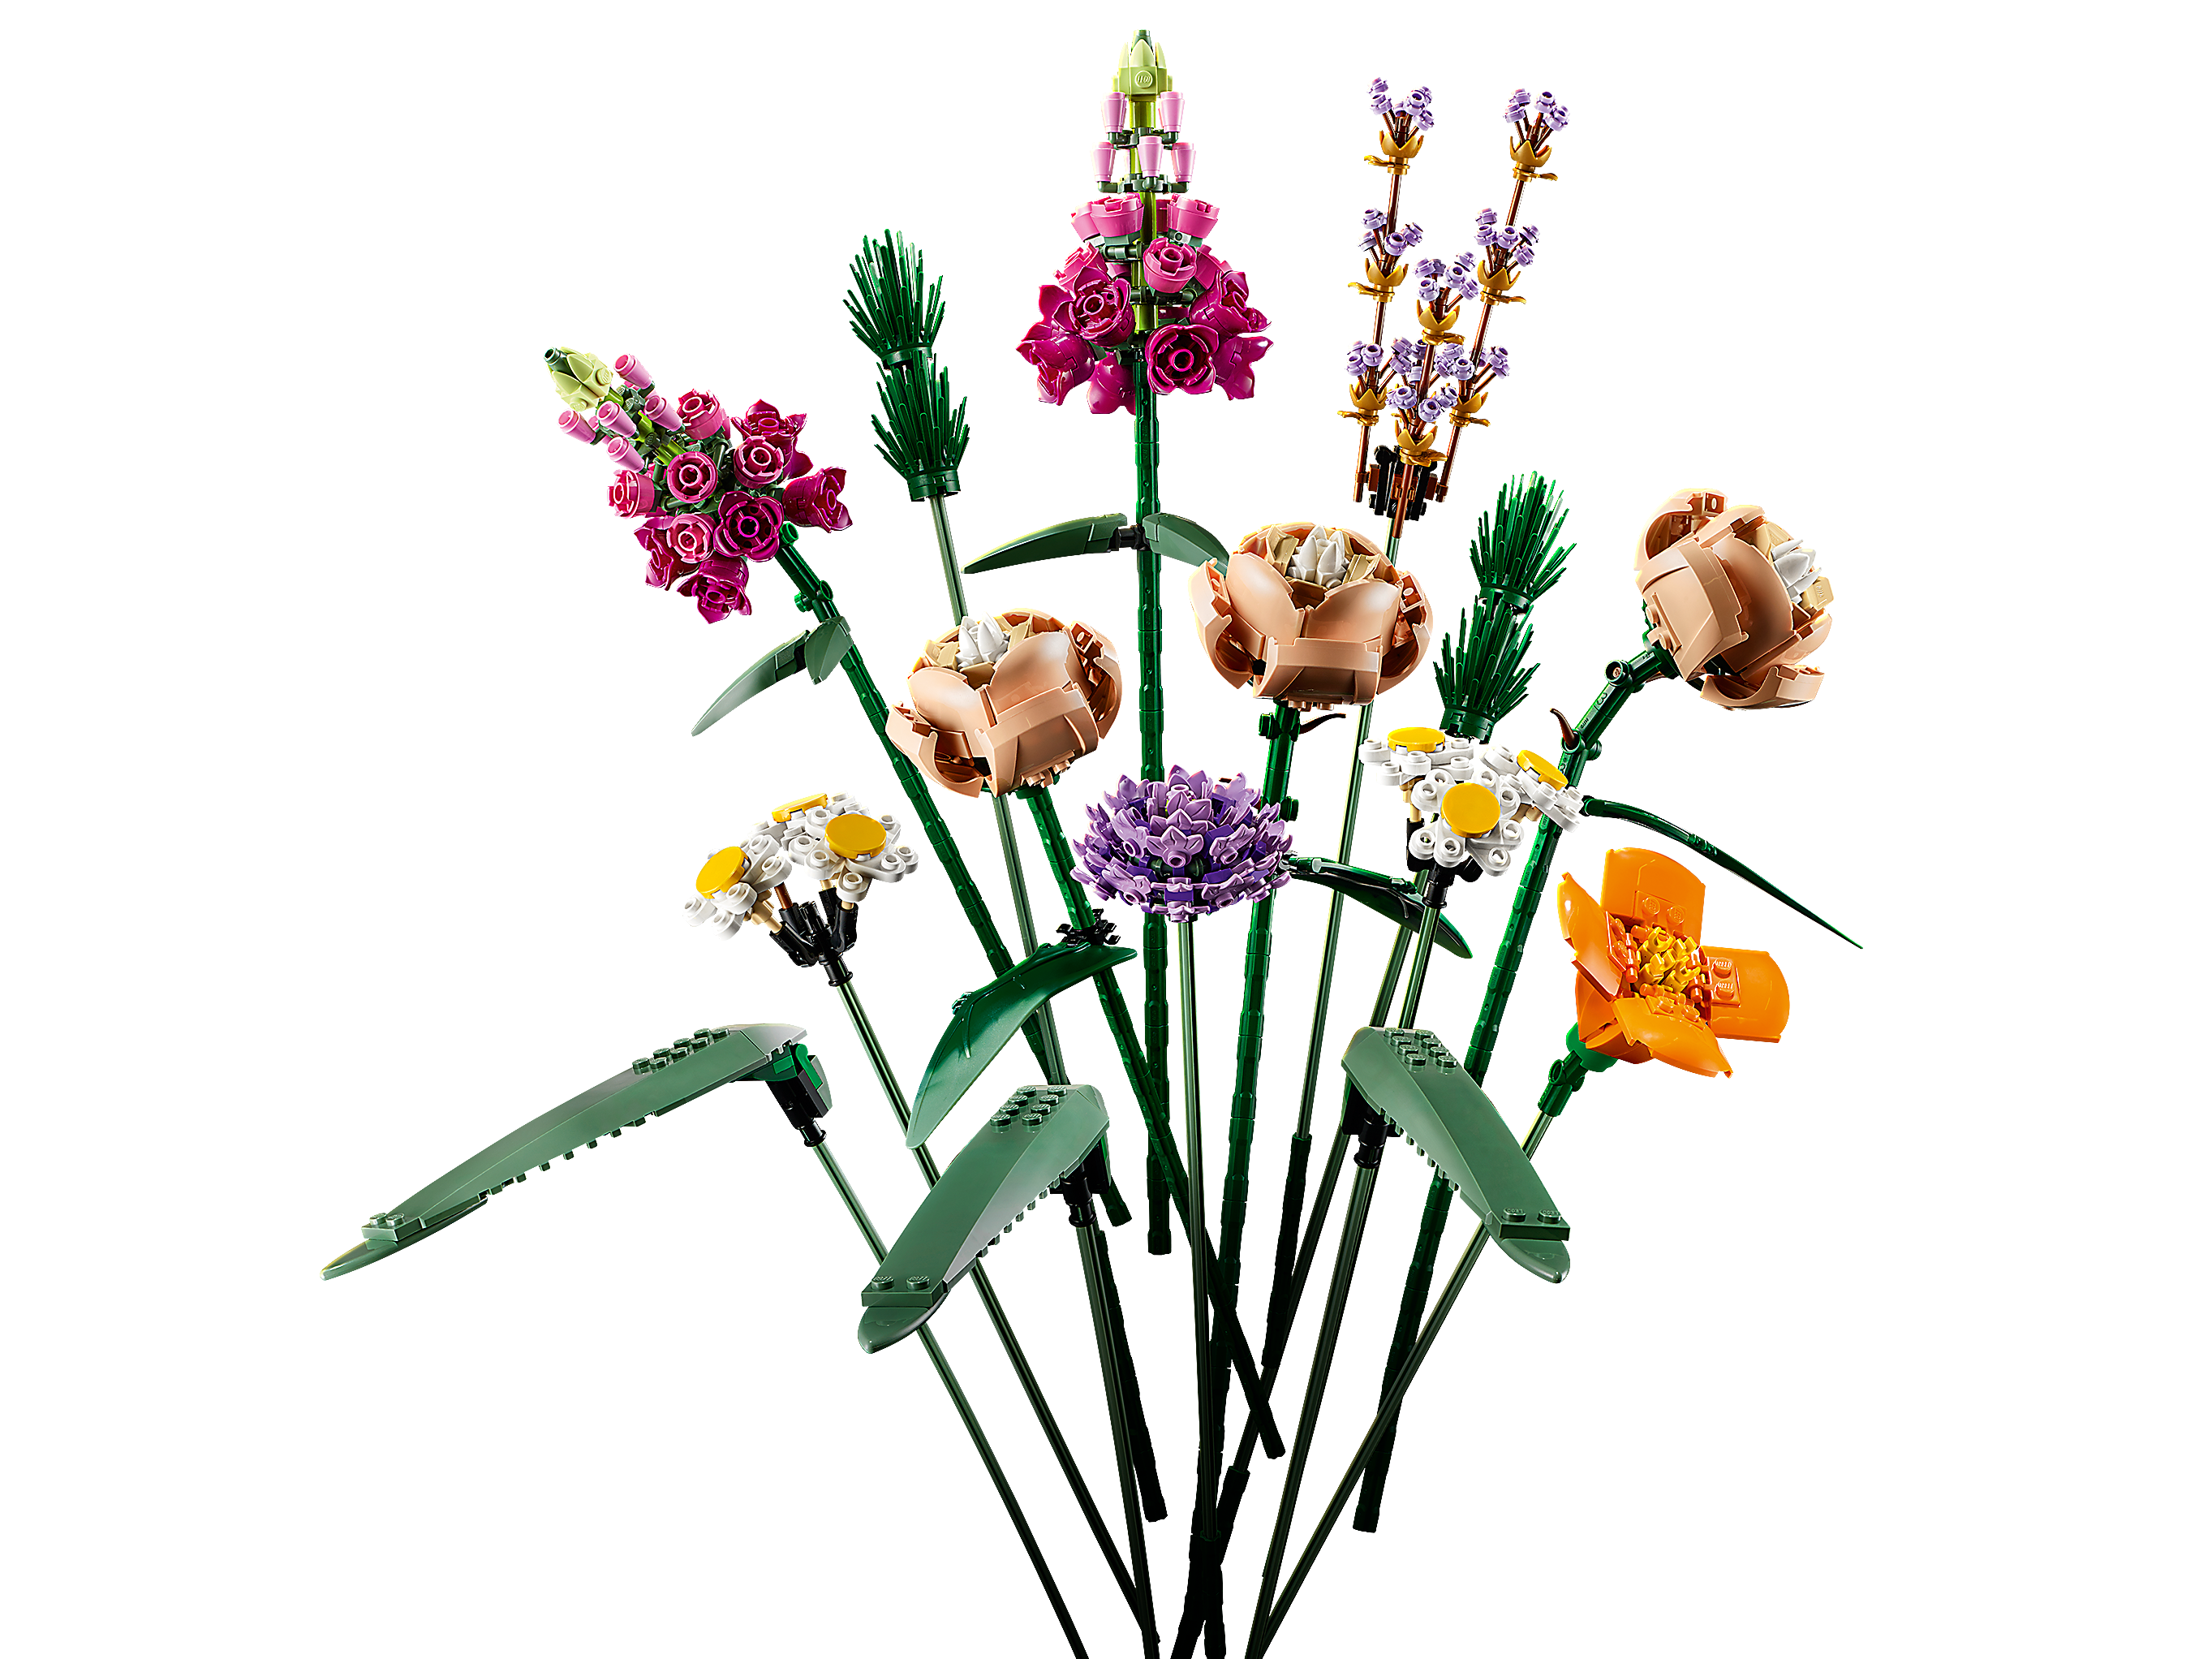 for sale online 756 Pieces LEGO Flower Bouquet 10280 Building Kit